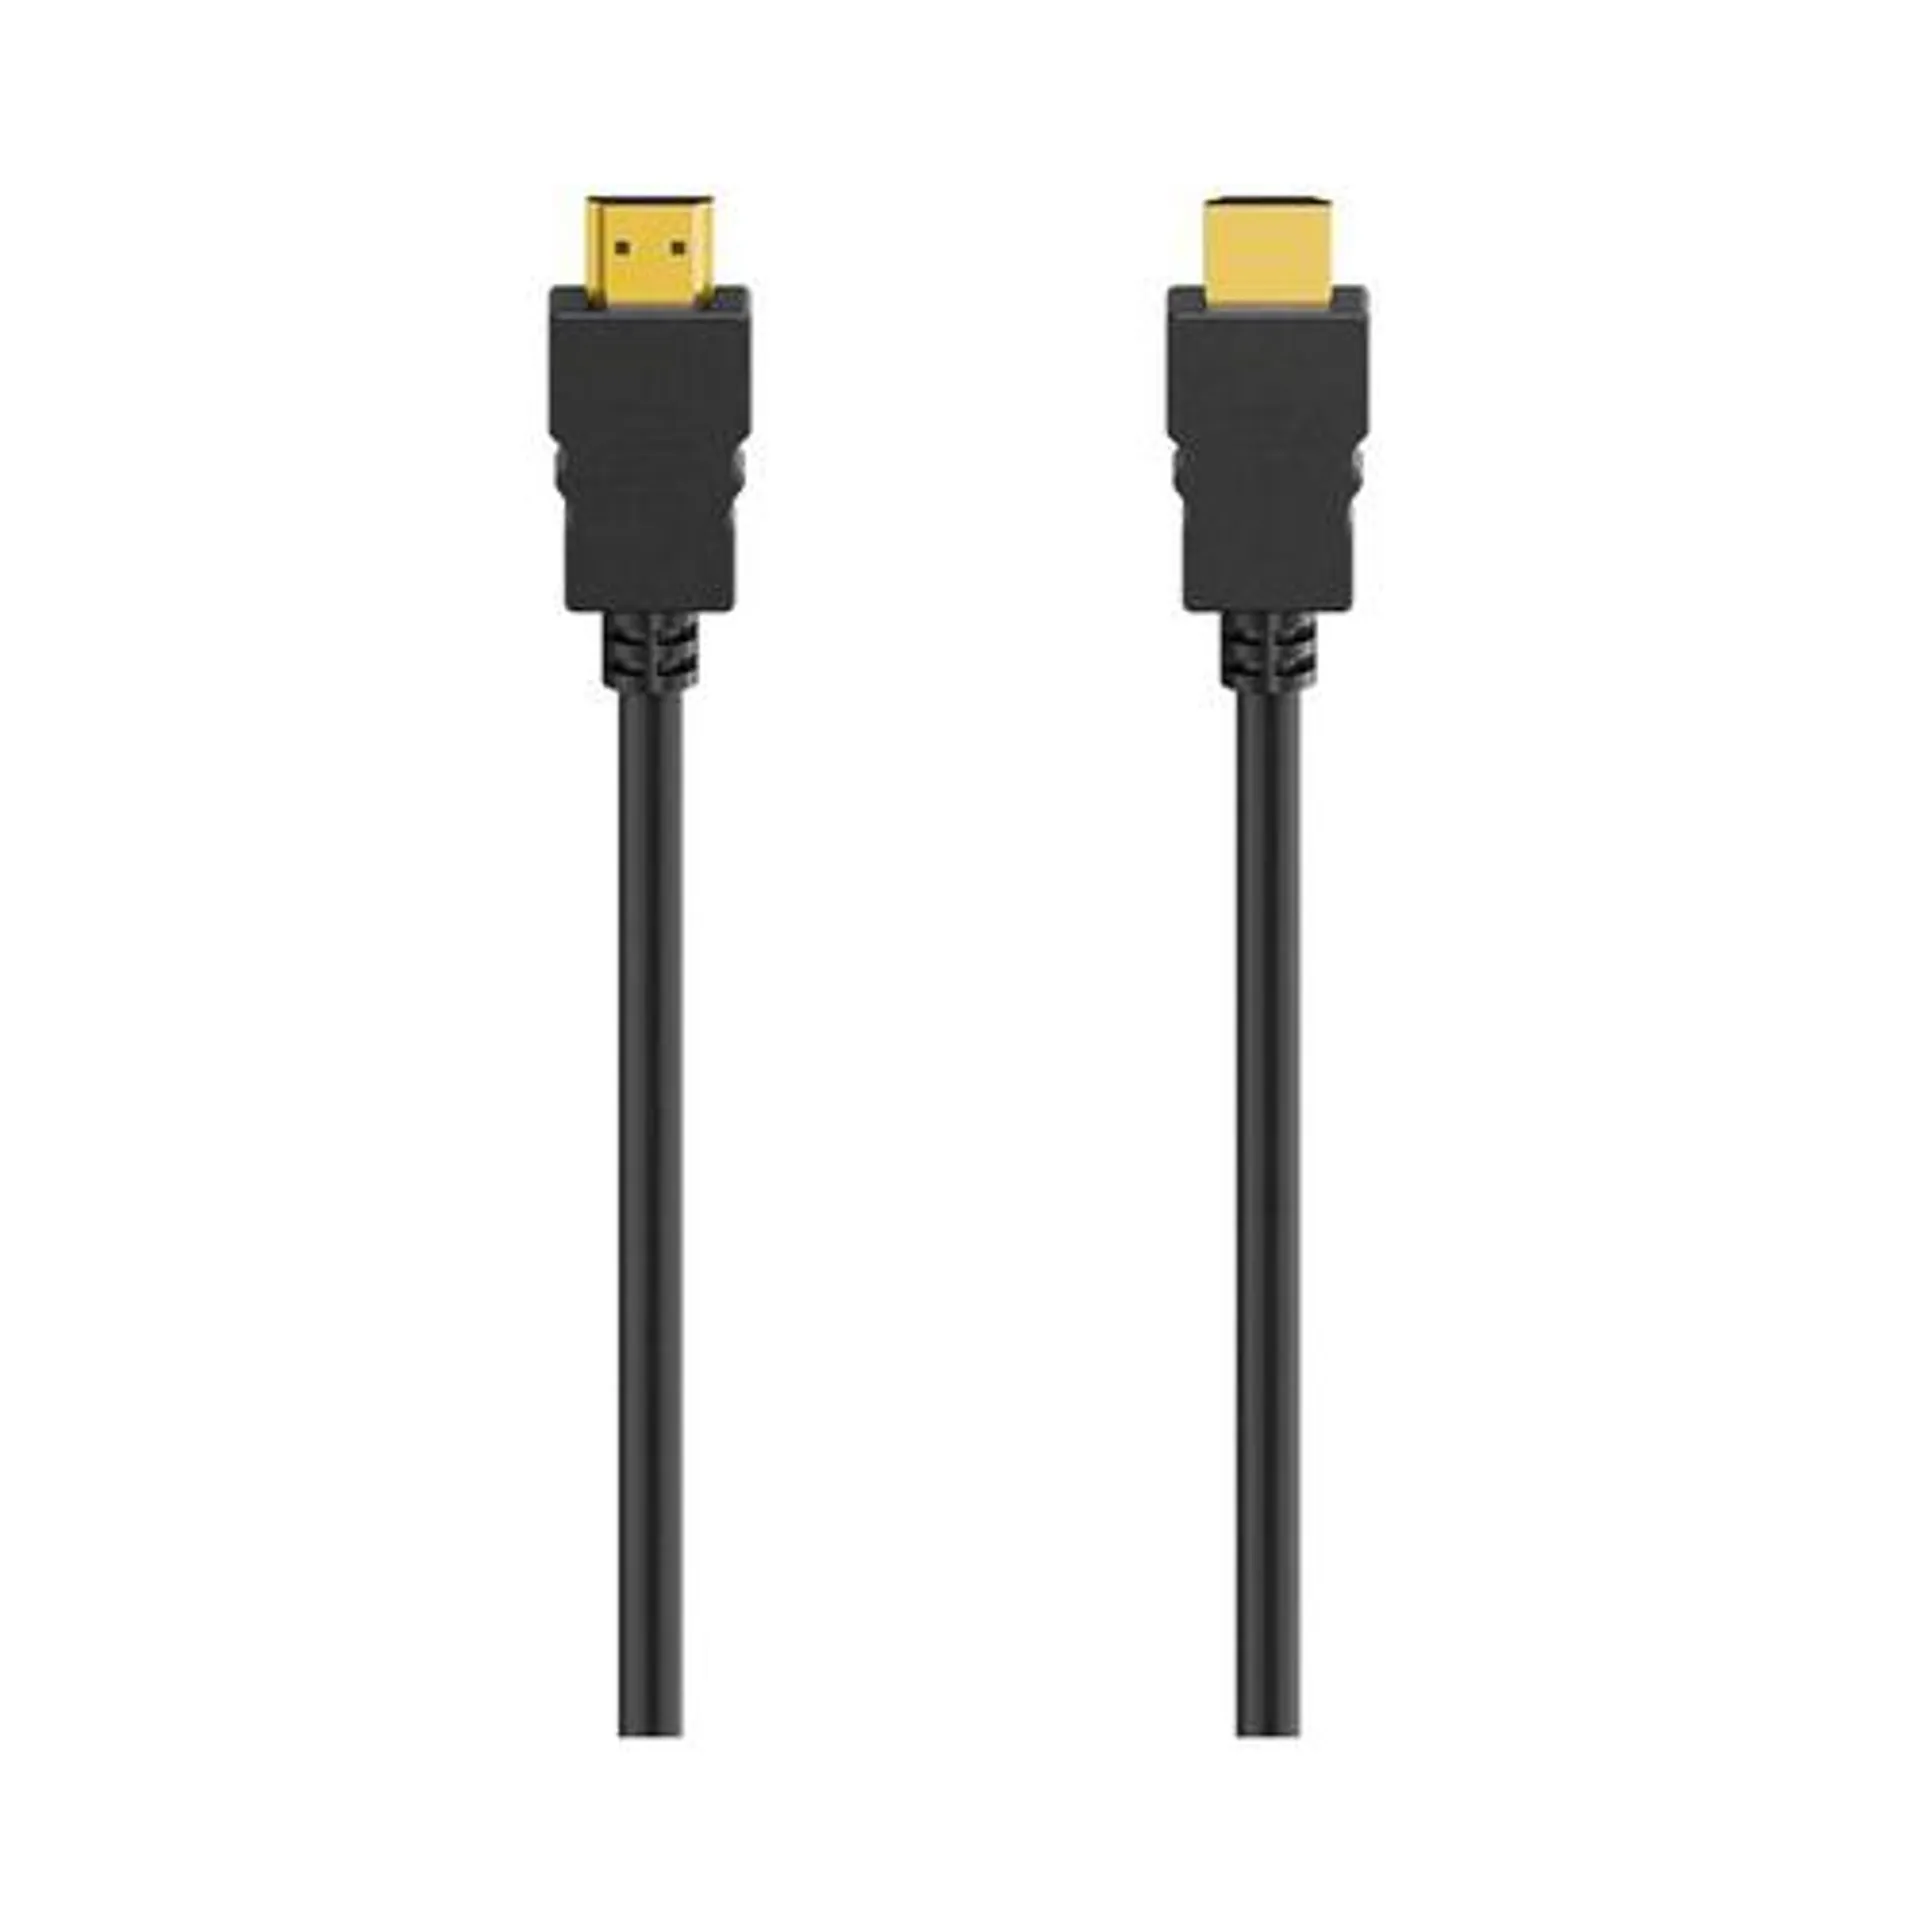 Cable HDMI QILIVE macho a macho de 1,5m, terminales dorados.